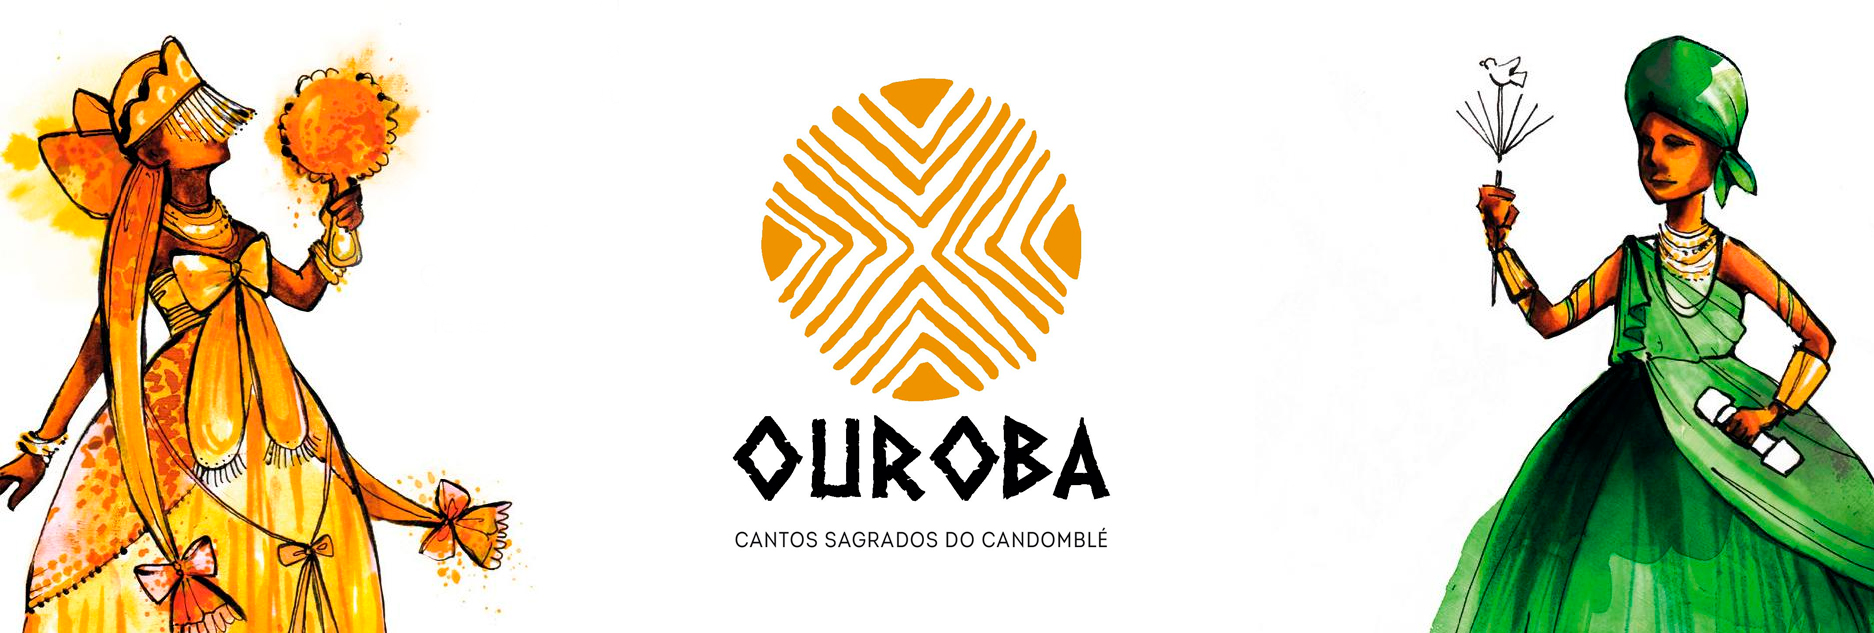 Conjunto vocal OuroBa harmoniza pepitas do candomblé em yorubá